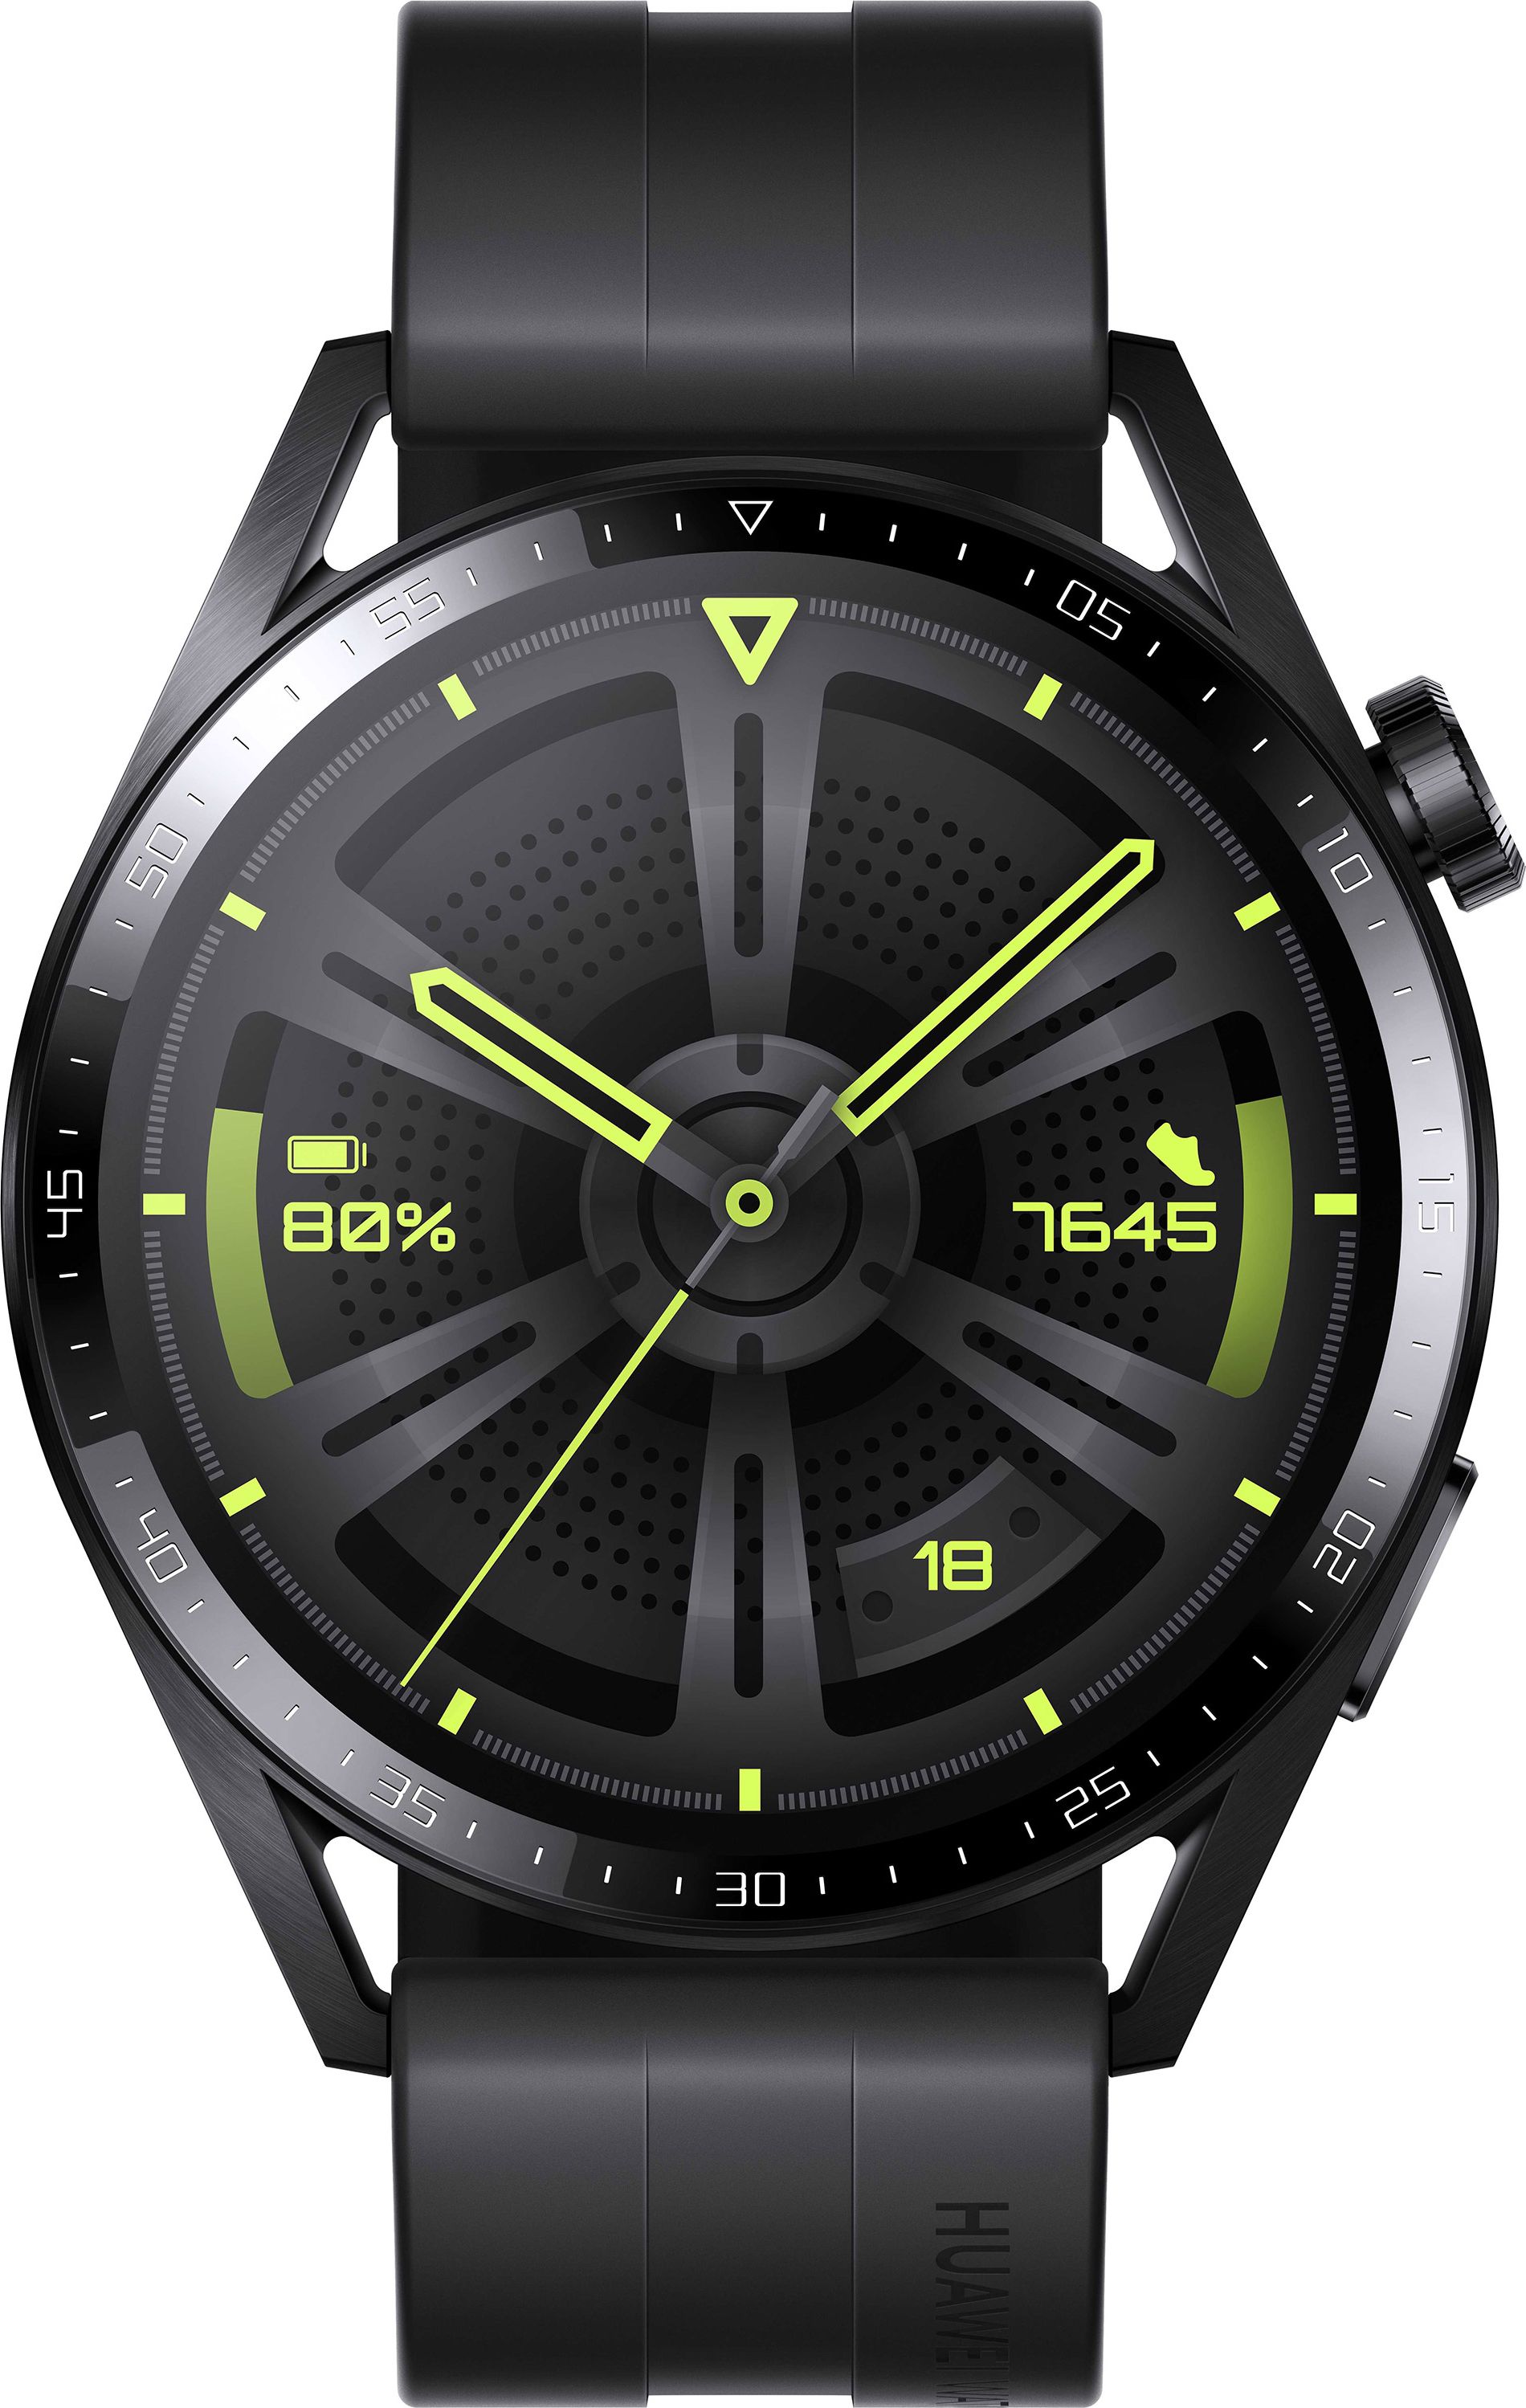 HUAWEI Watch GT3 Smart Watch - Black, Black